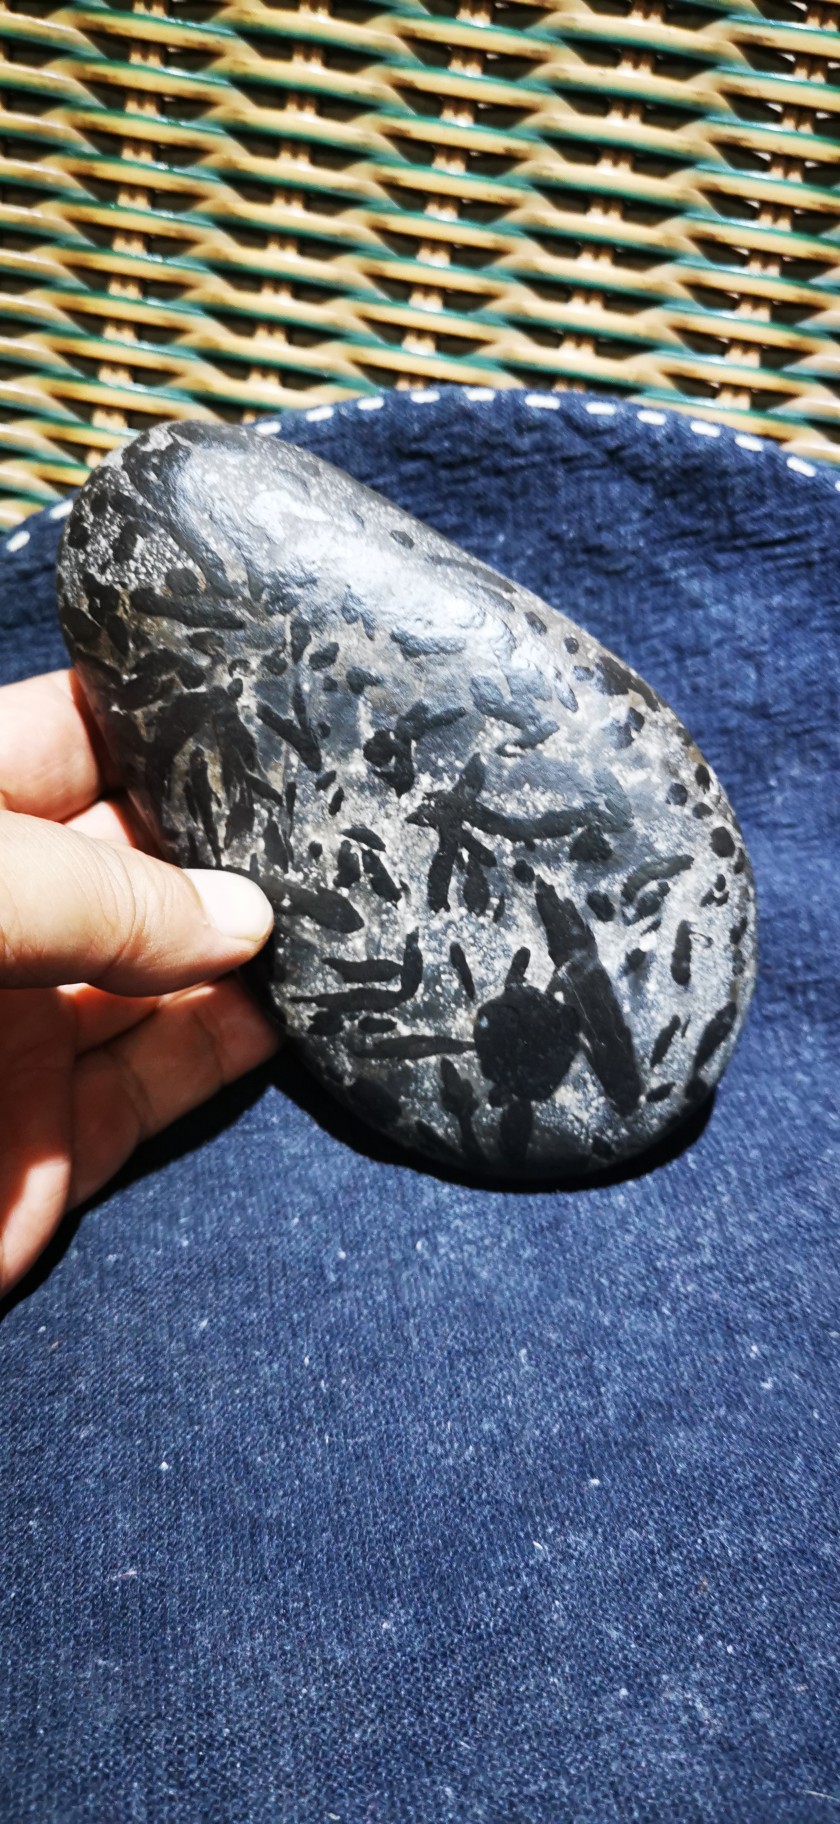 捡石人自捡的新疆戈壁石奇石观赏石小摆件 细腻圆润有黑多小虫子